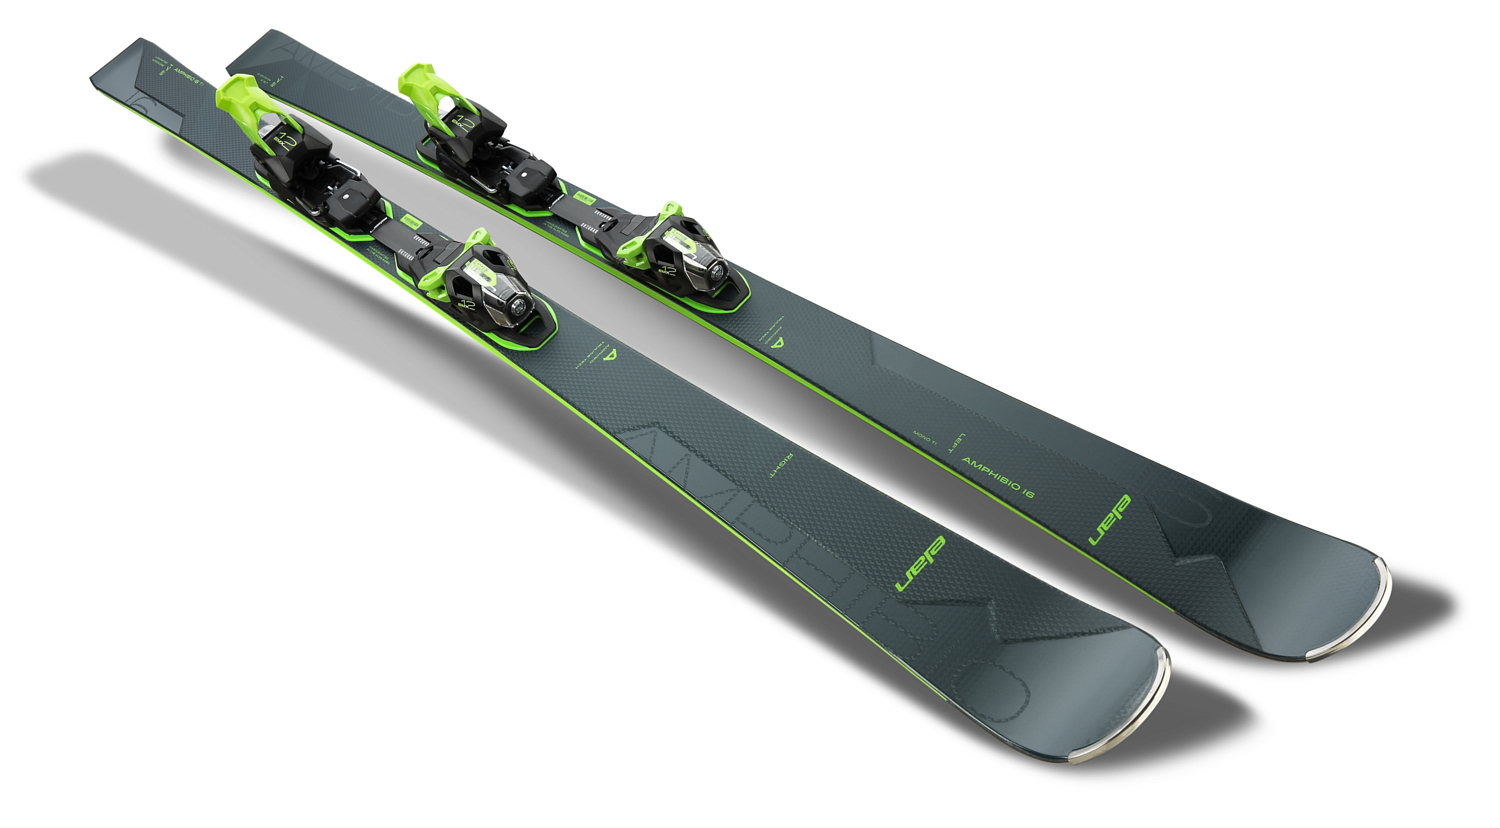 Горные лыжи с креплениями ELAN Amphibio 16Ti FusionX + EMX 12 FusionX